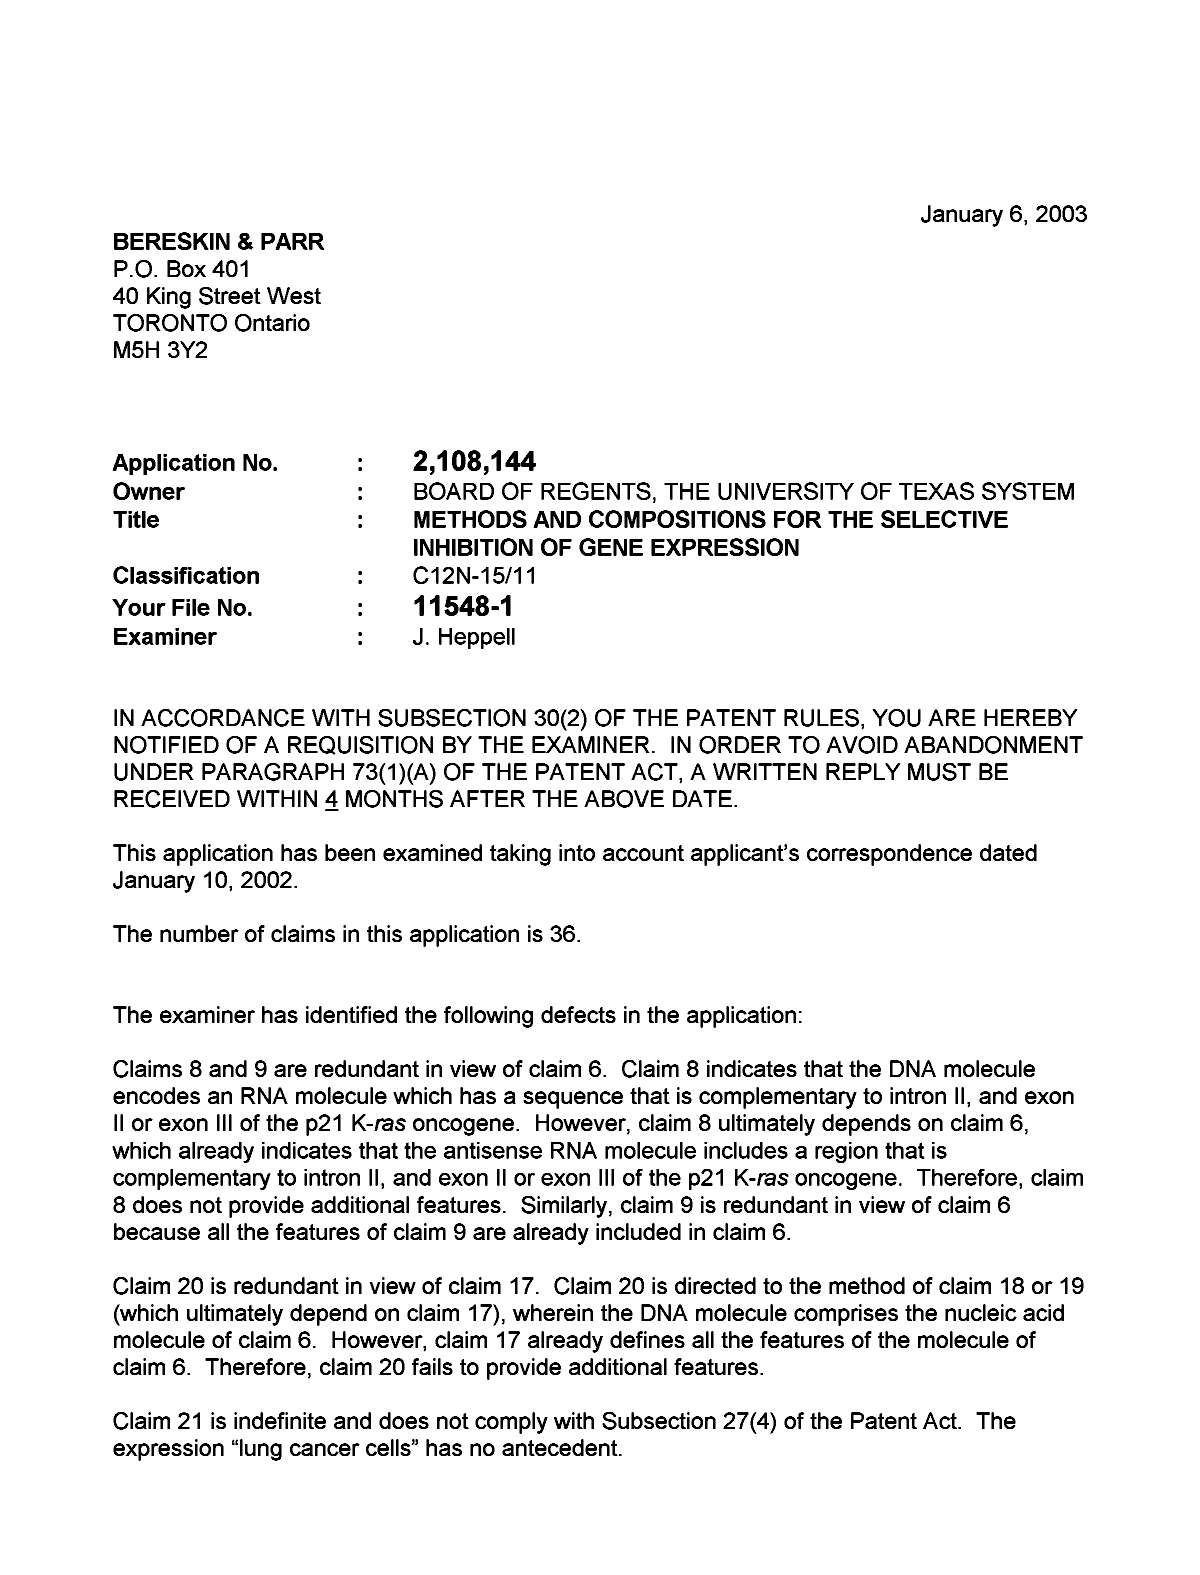 Document de brevet canadien 2108144. Poursuite-Amendment 20030106. Image 1 de 2